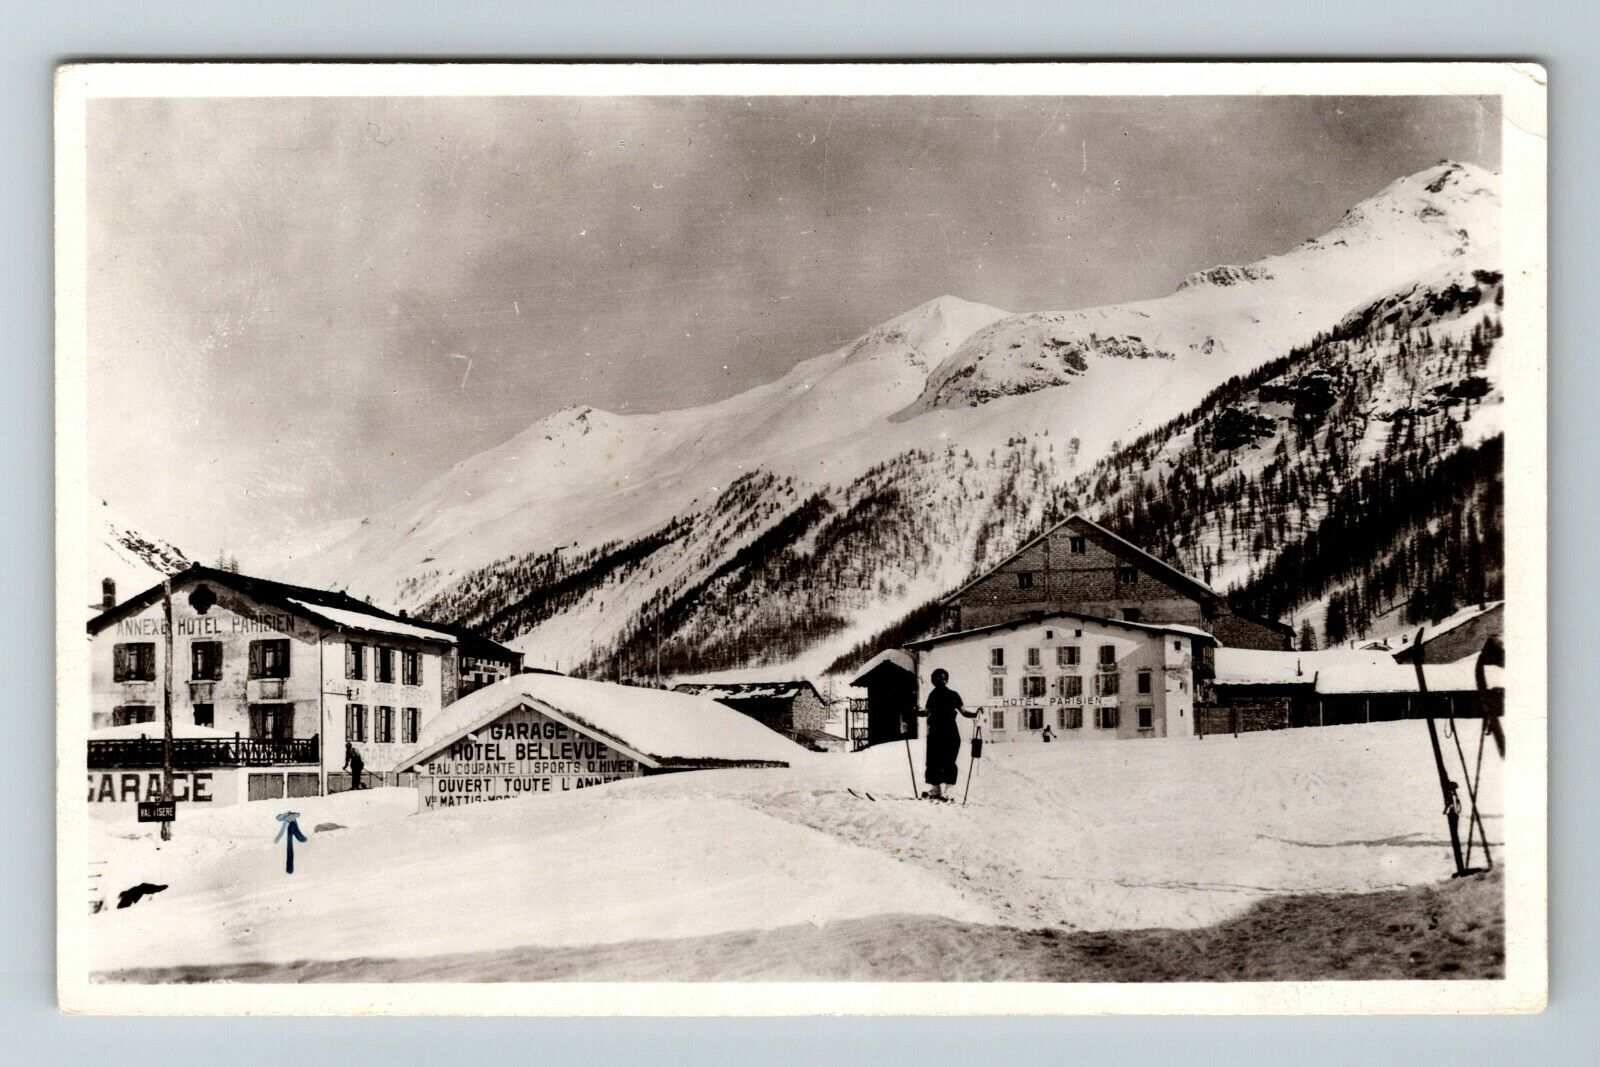 RPPC-France, Signal de l'Isseran Pointe de Lessieres RPPC Vintage Postcard